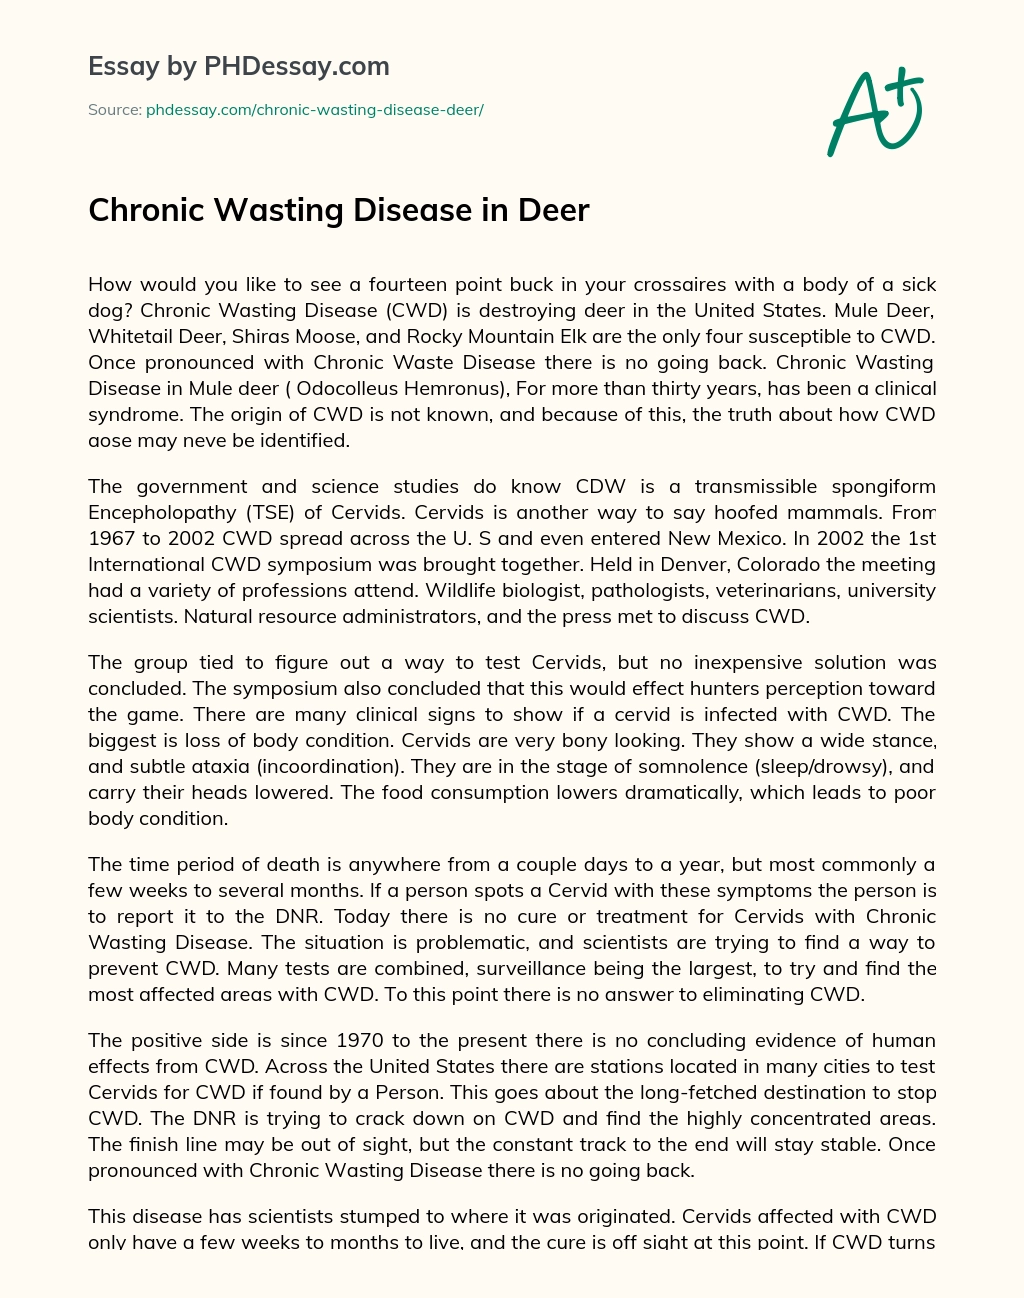 Chronic Wasting Disease in Deer essay